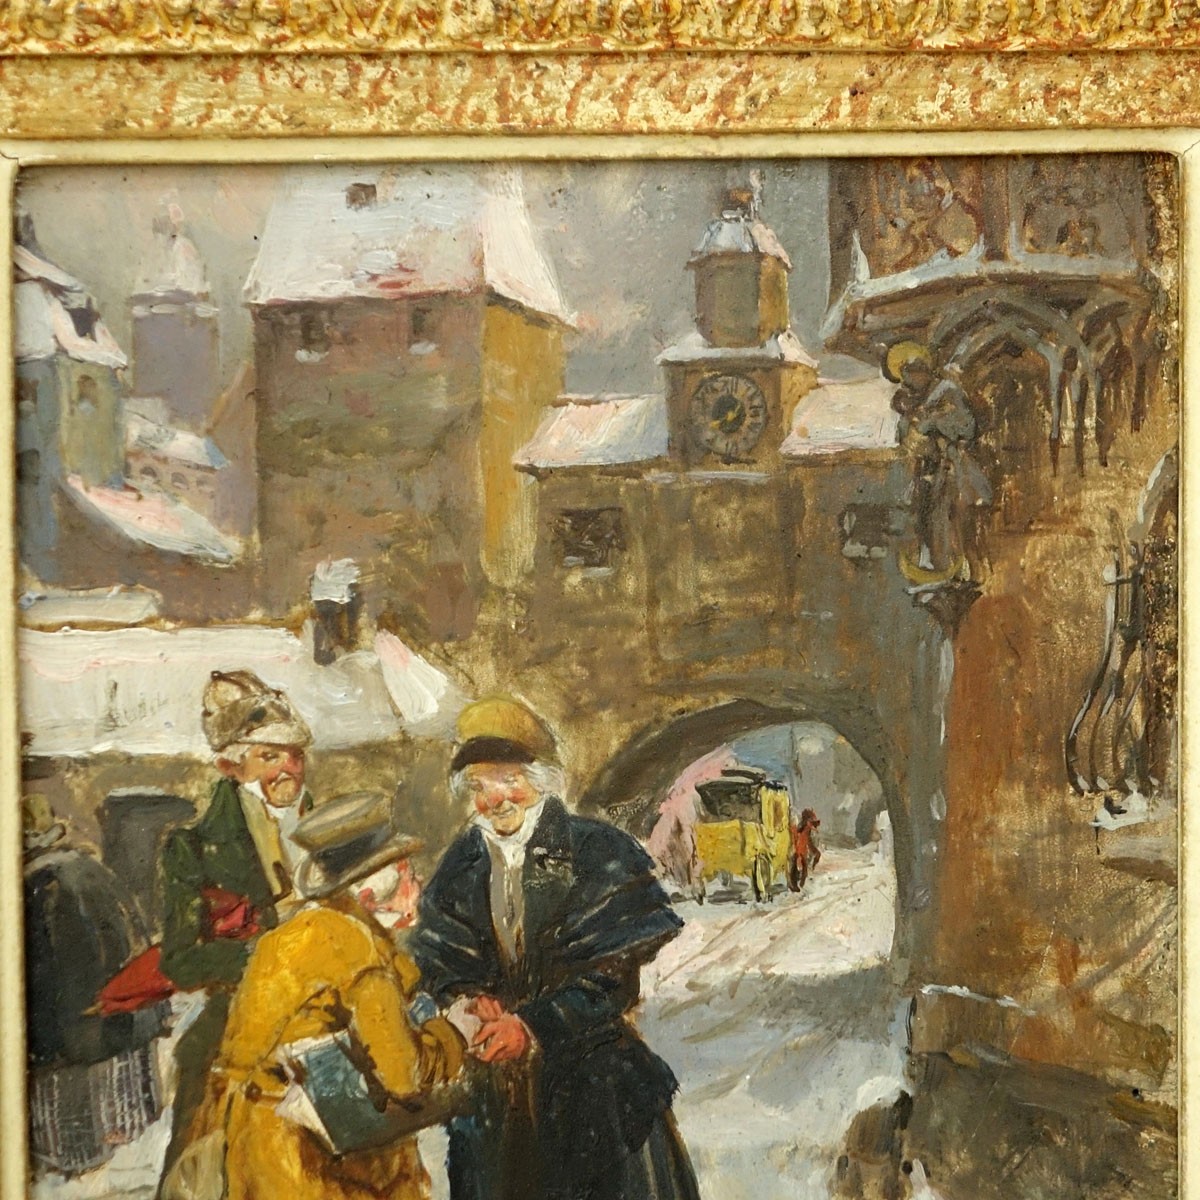 Wilhelm Roegge I, German  (1829 - 1908) Oil on Board, Street Scen